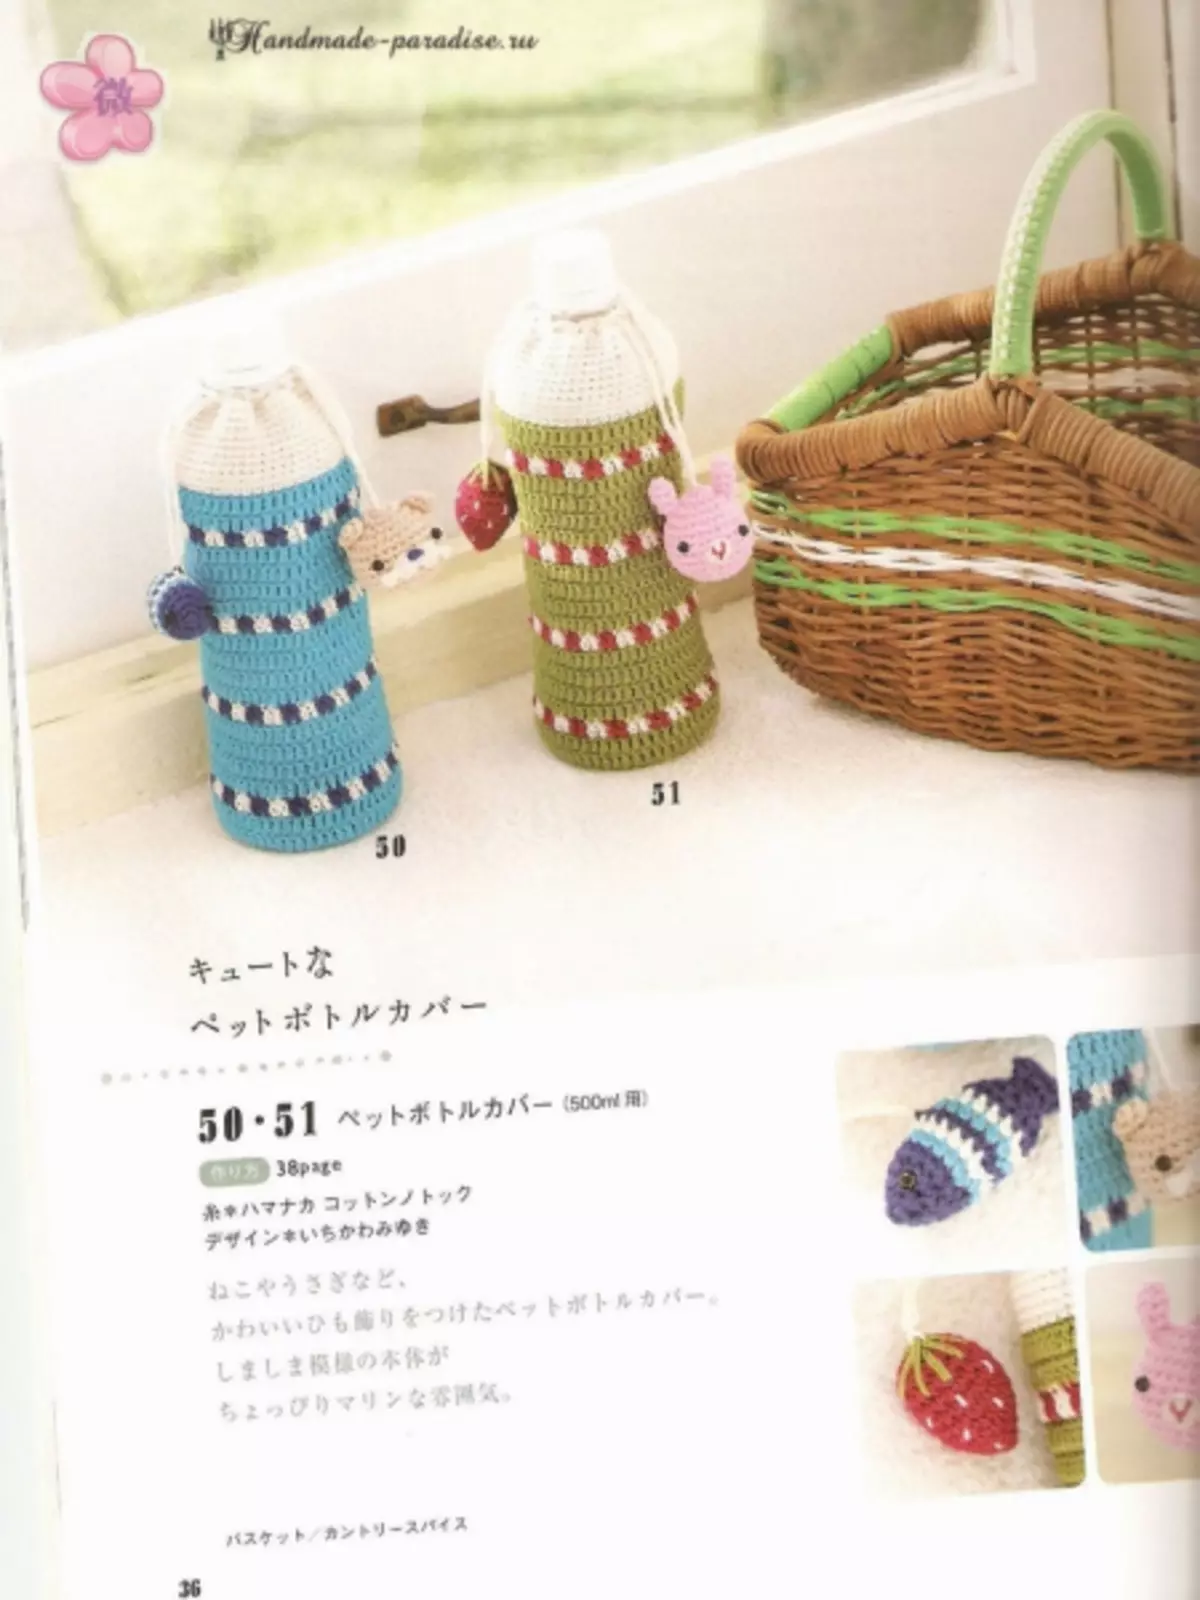 Hækletilbehør. Japansk magasin med ordninger